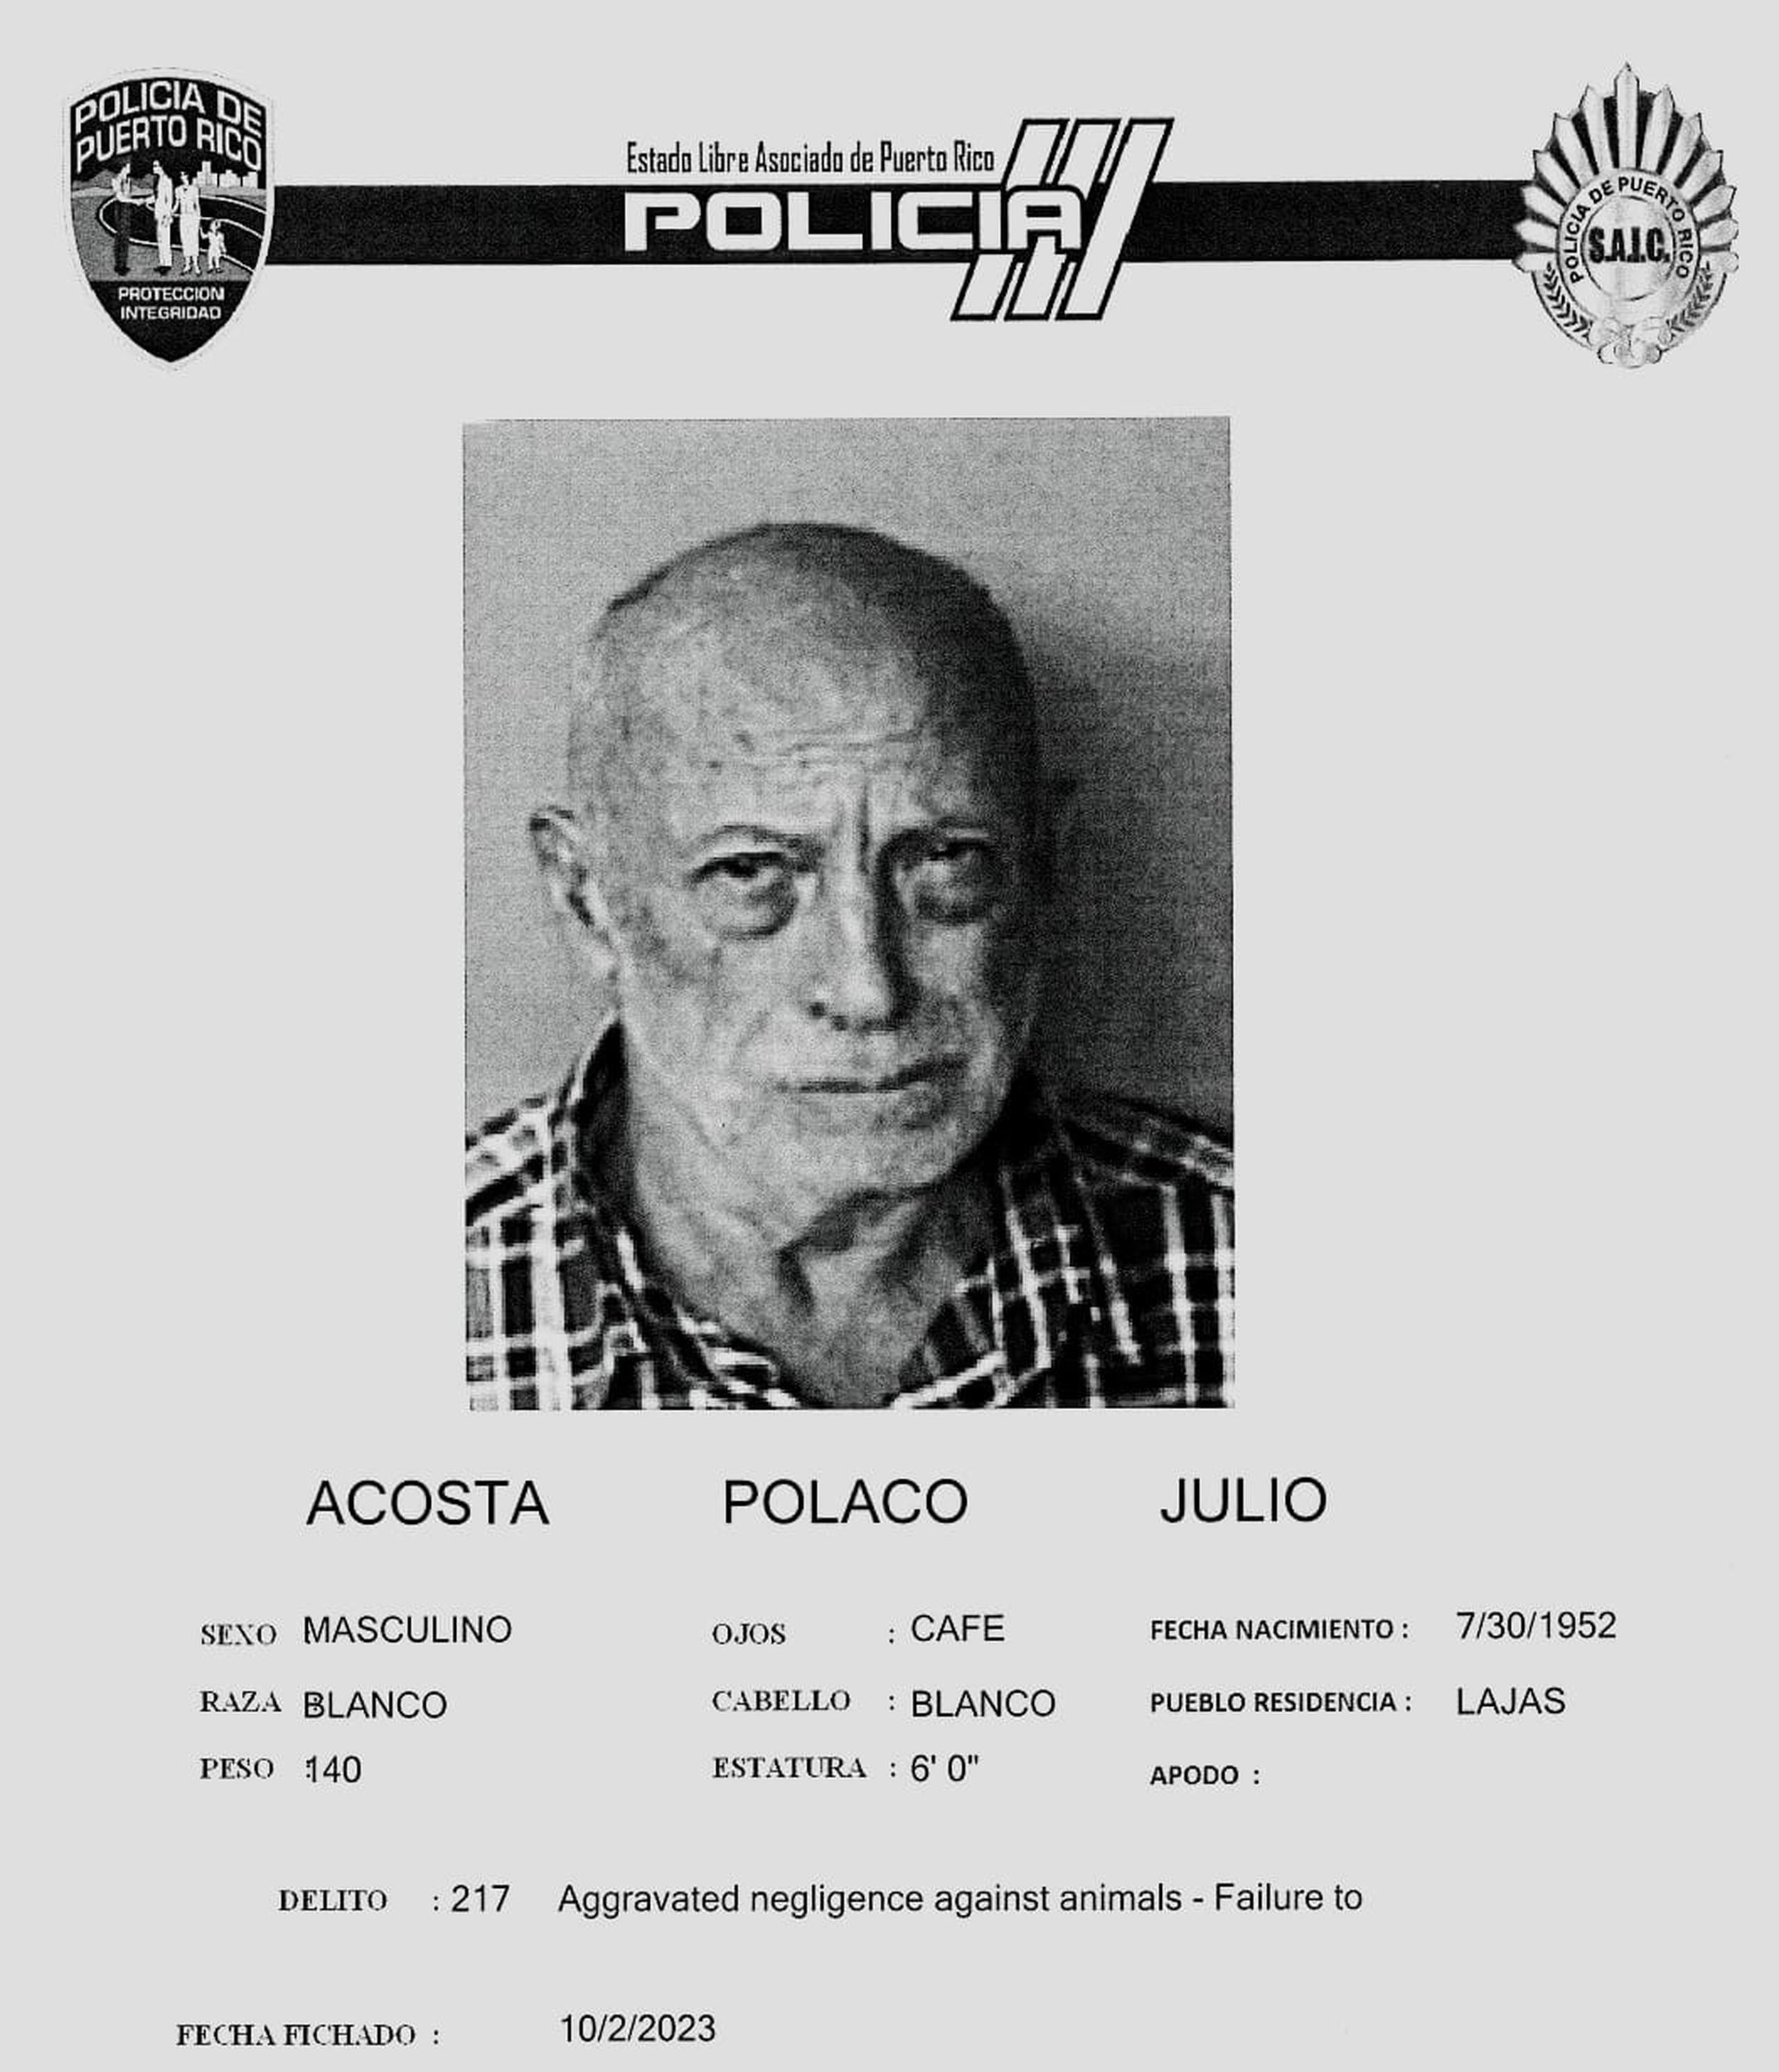 Julio Acosta Polaco quedó en libertad al prestar la fianza de $3,000.00.